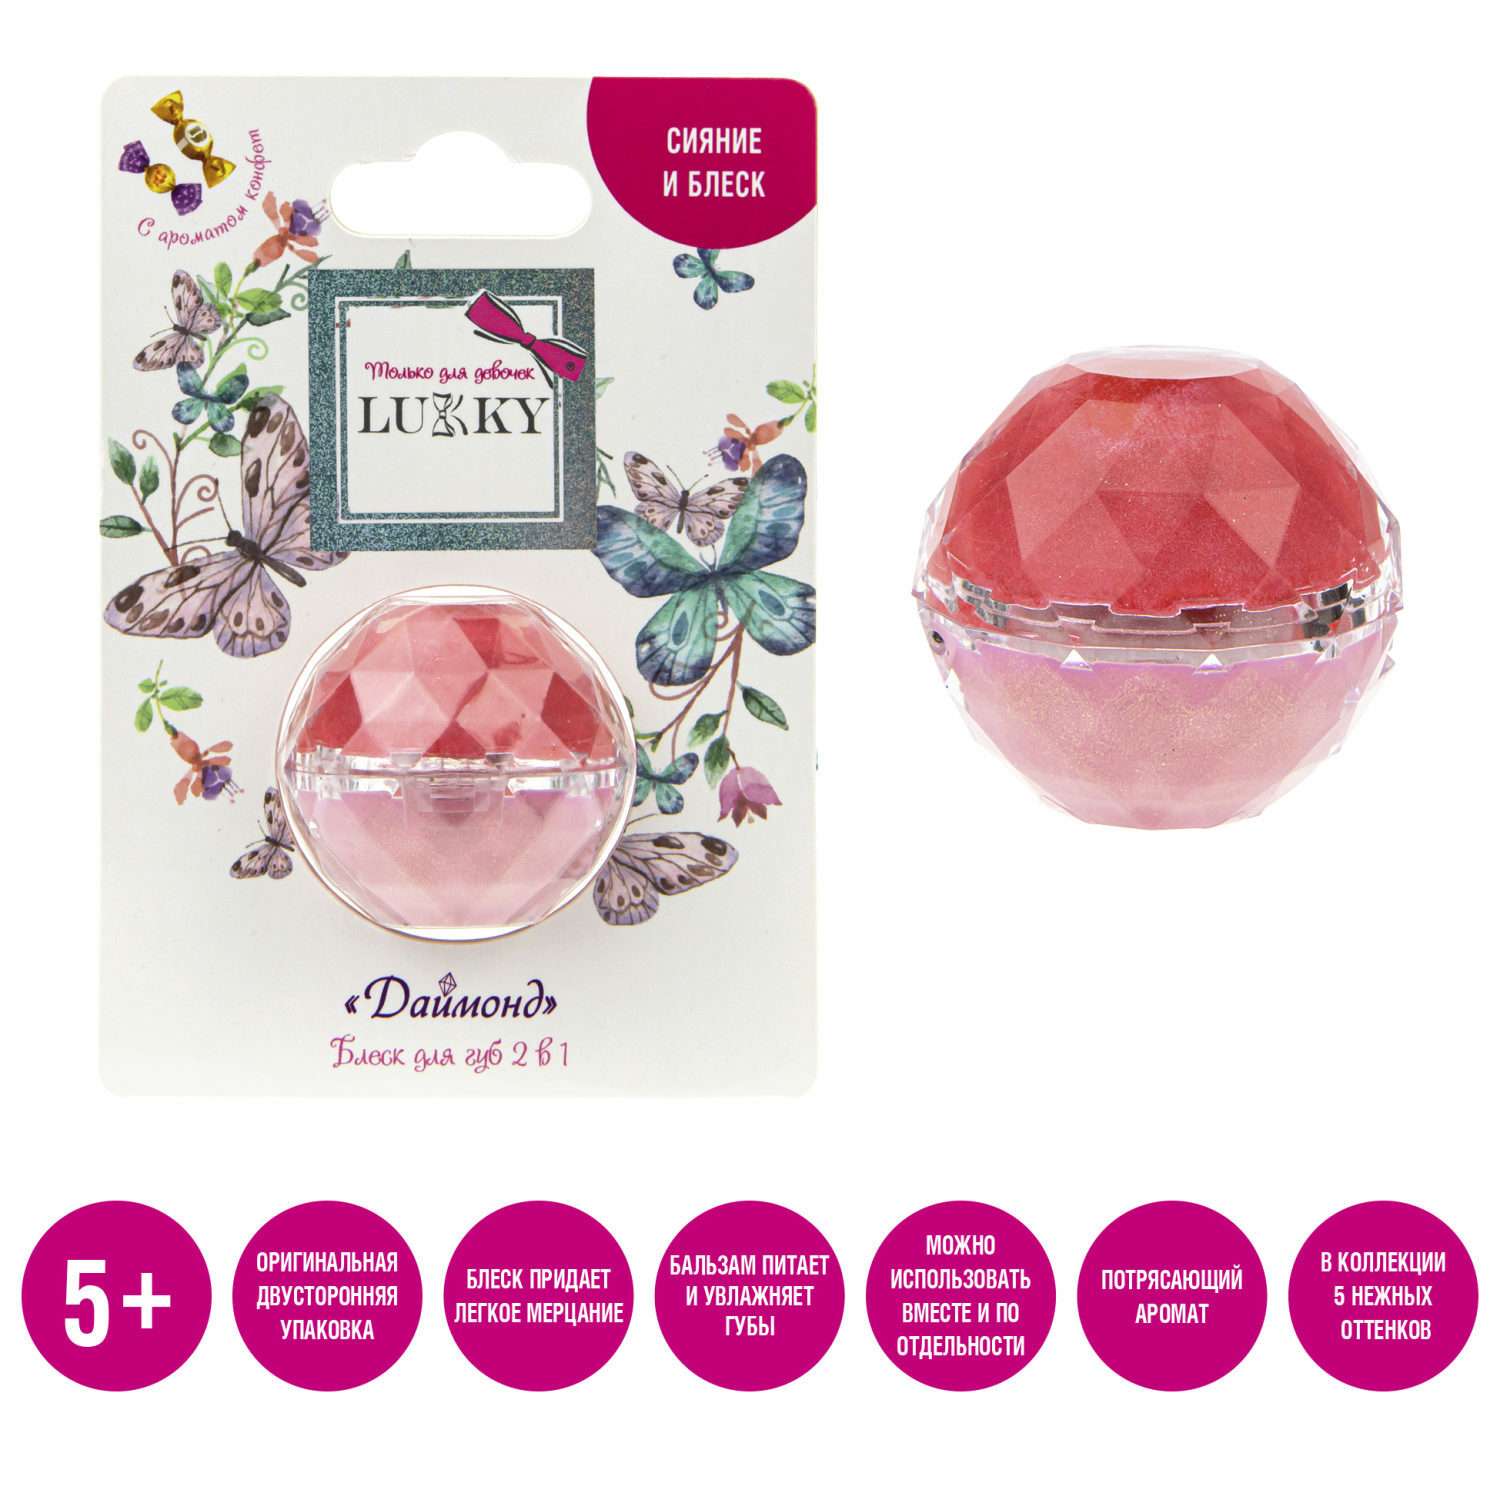 Блеск для губ Lukky Даймонд 2 в 1 цвет конфетно-розовый и бледно-розовый - фото 2